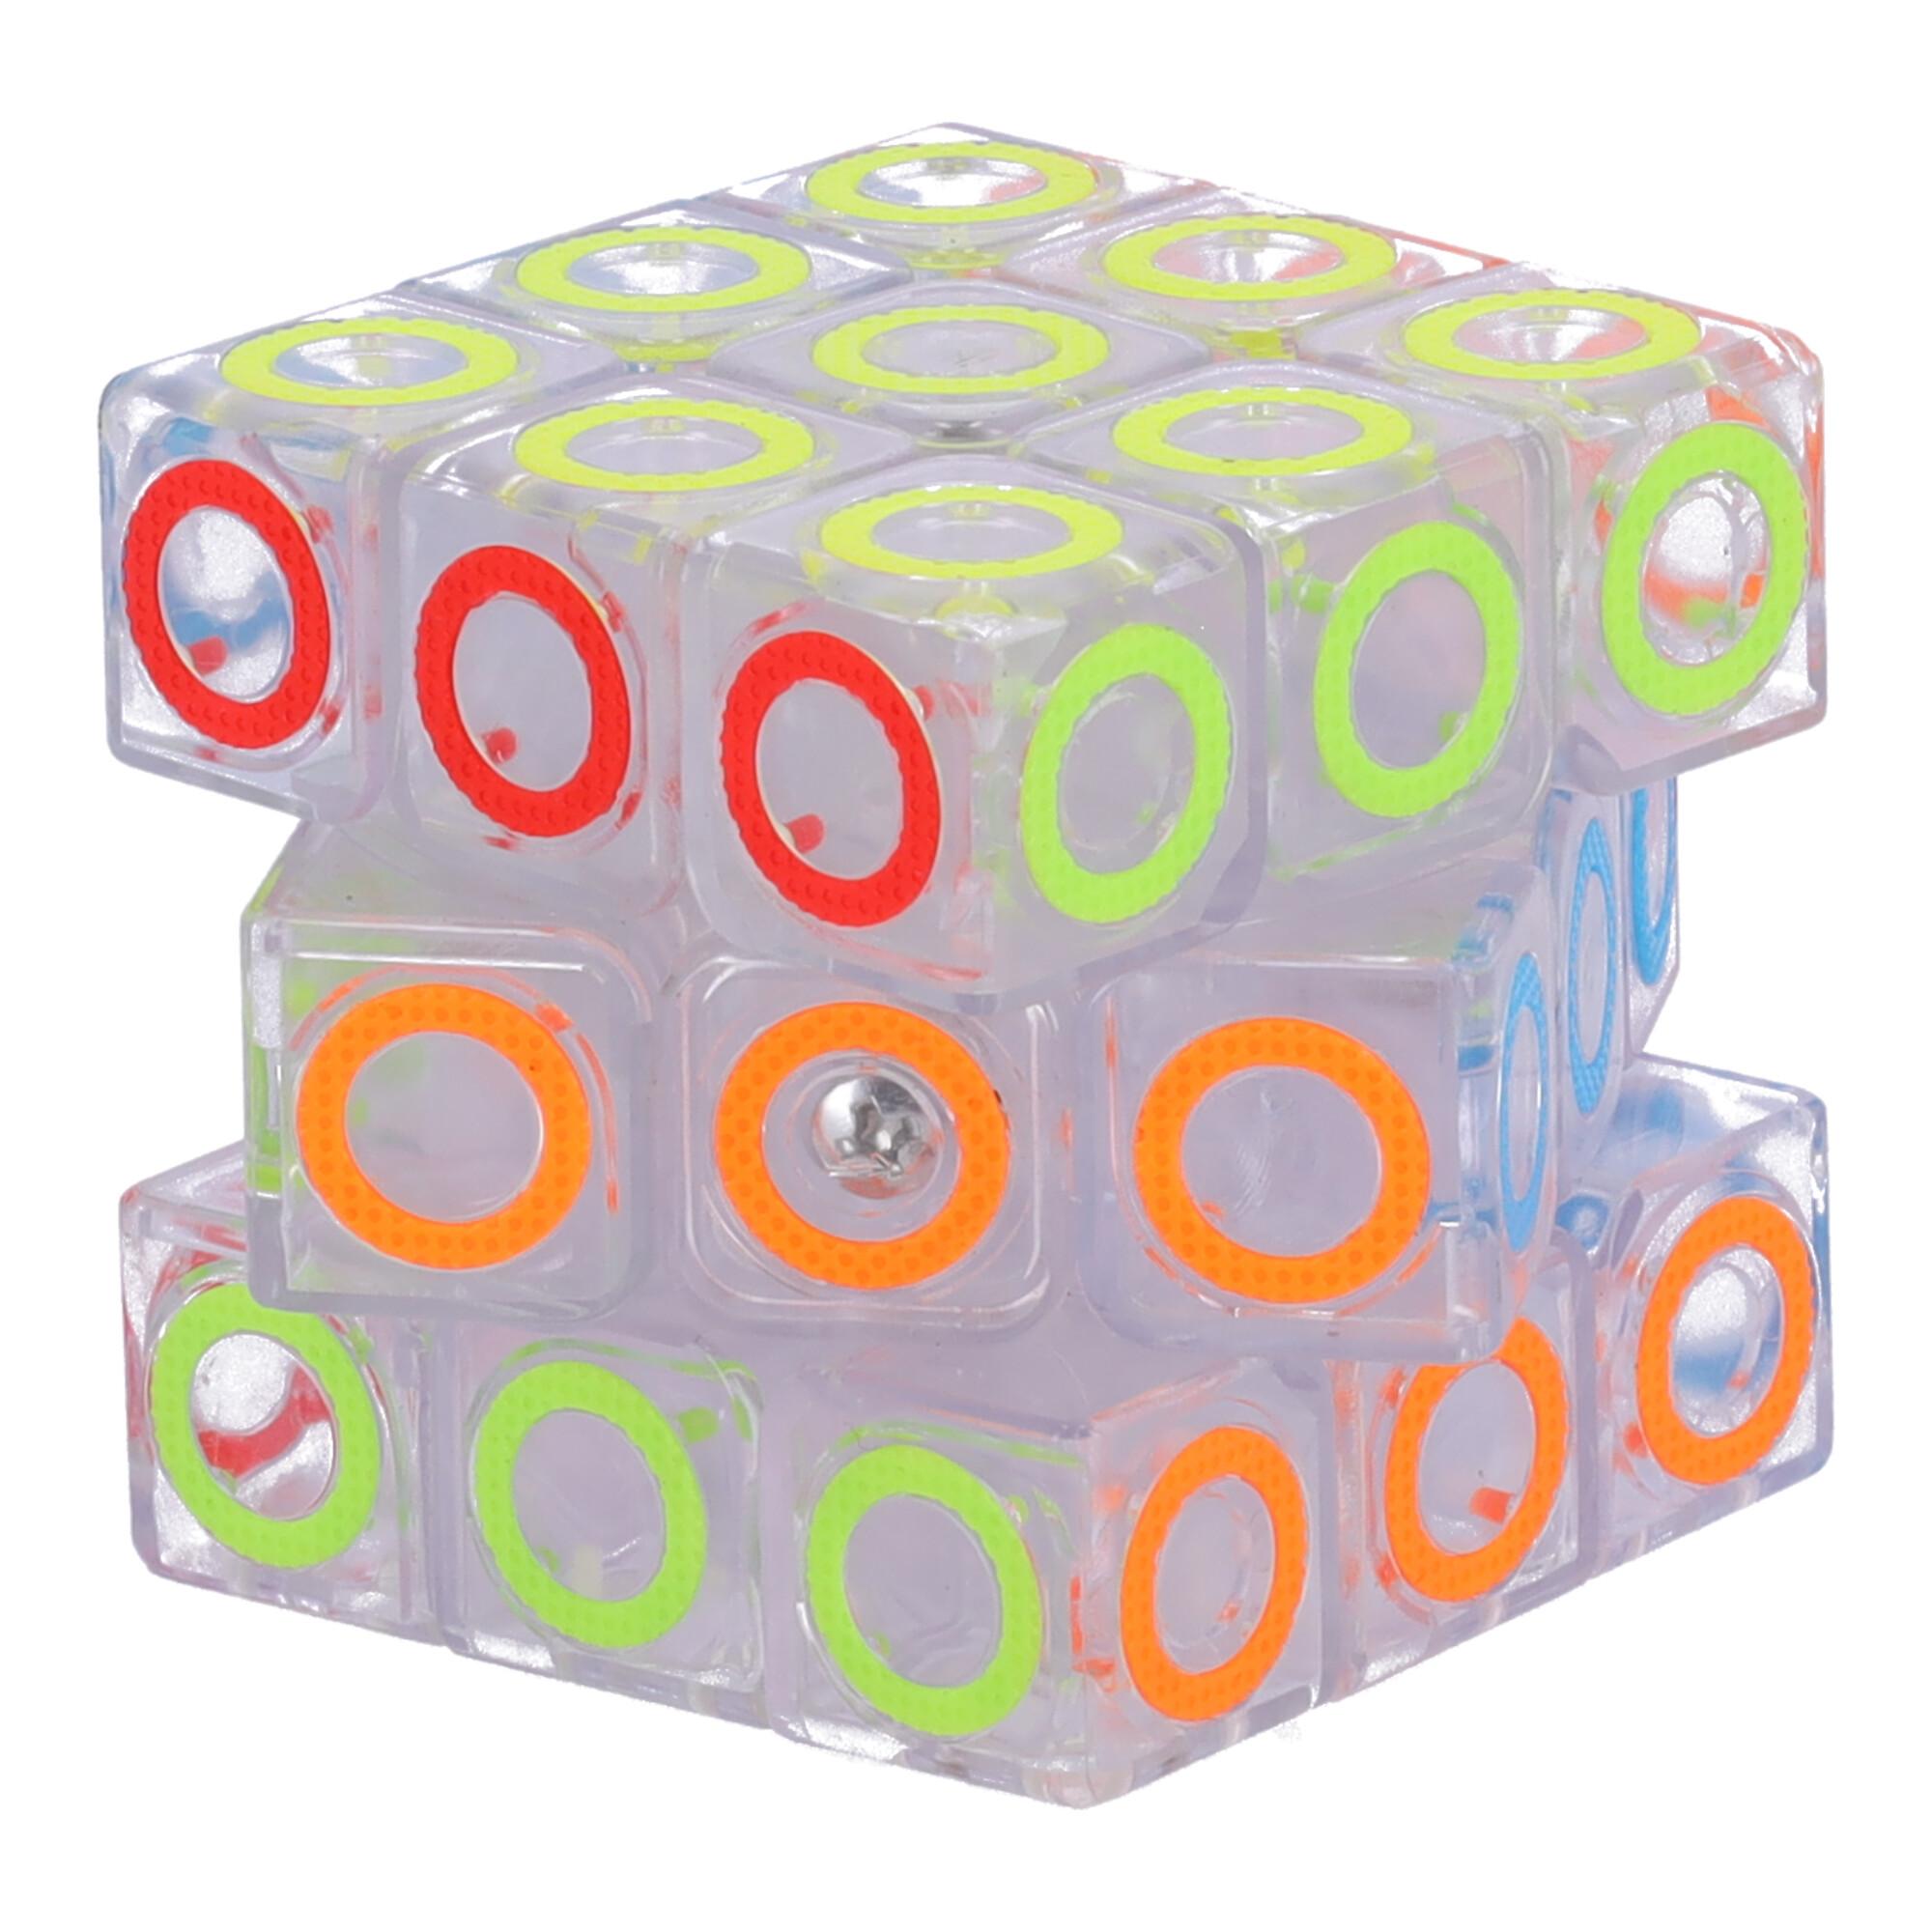 Nowoczesna układanka, kostka logiczna, Kostka Rubika - typ IV